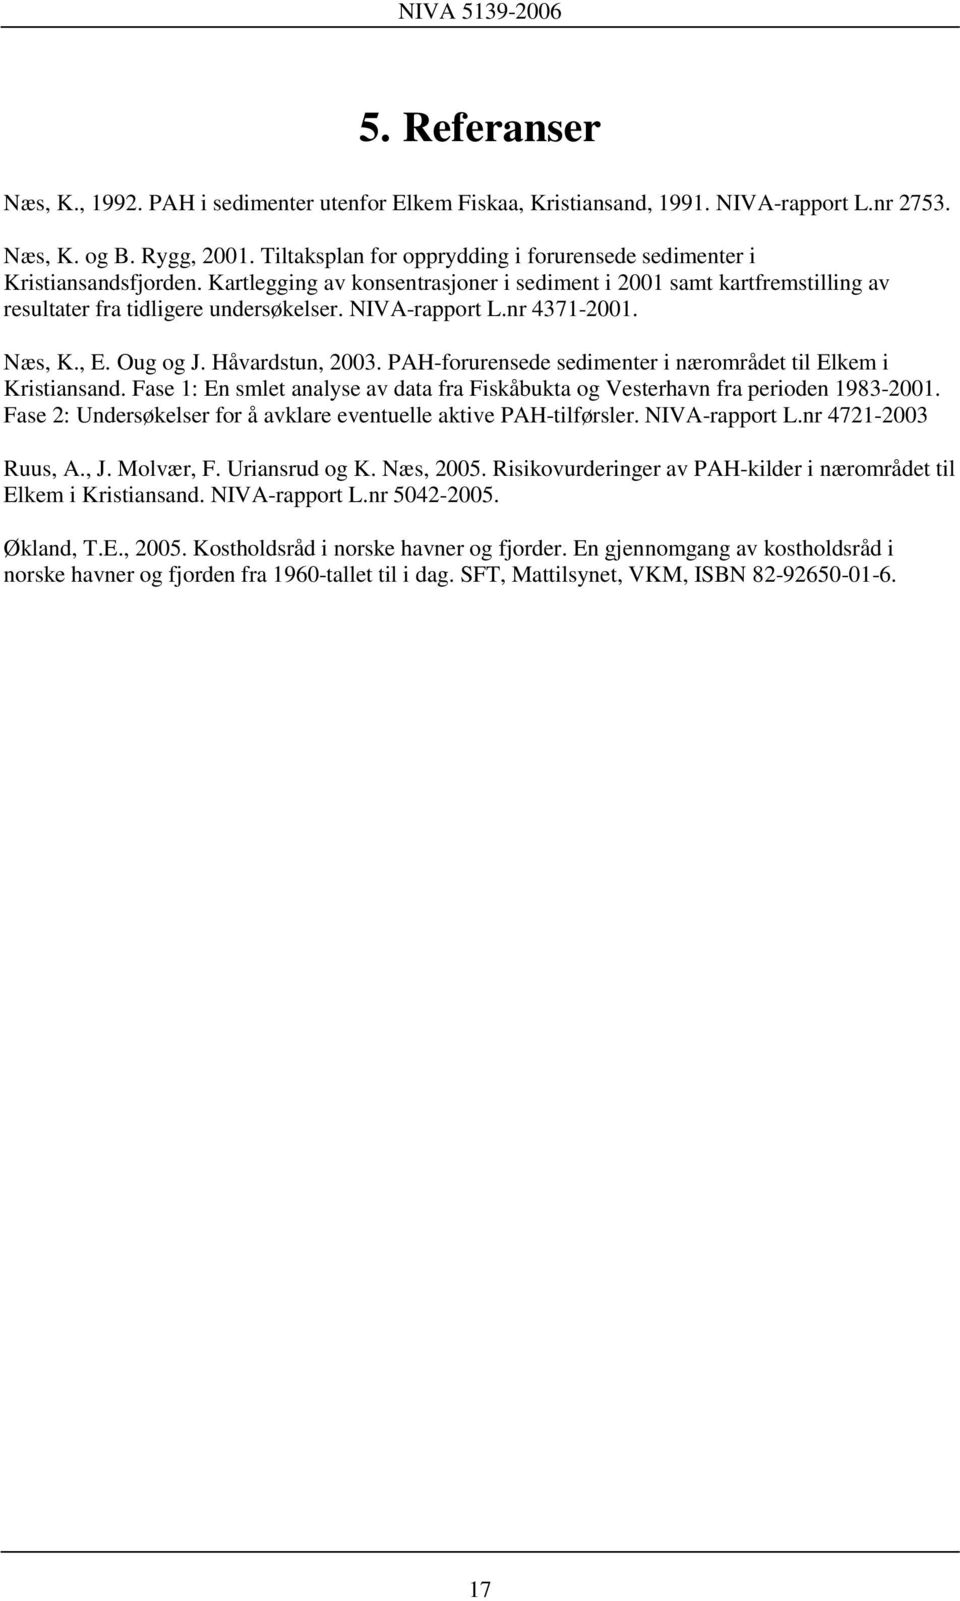 NIVA-rapport L.nr 4371-2001. Næs, K., E. Oug og J. Håvardstun, 2003. PAH-forurensede sedimenter i nærområdet til Elkem i Kristiansand.